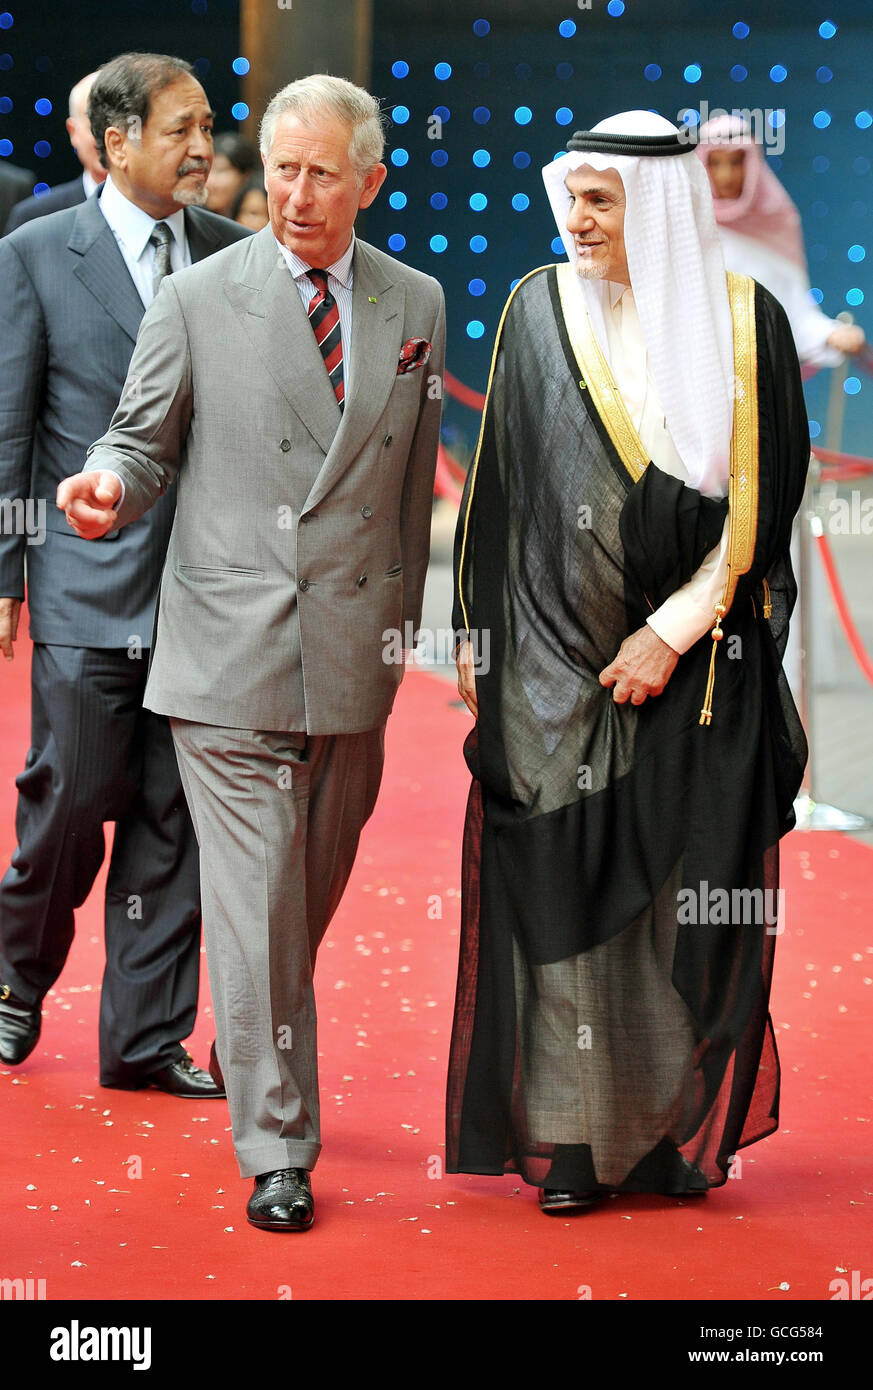 Der Prinz von Wales (links) und seine Königliche Hoheit Prinz Turki Al Faisal bin Abdul Aziz Al Saud (rechts) kommen im BFI Imax Kino im Zentrum von London zur Premiere des Films Arabia an, einer 3D-Dokumentation, die die Geschichte und Kultur Saudi-Arabiens feiert. Stockfoto